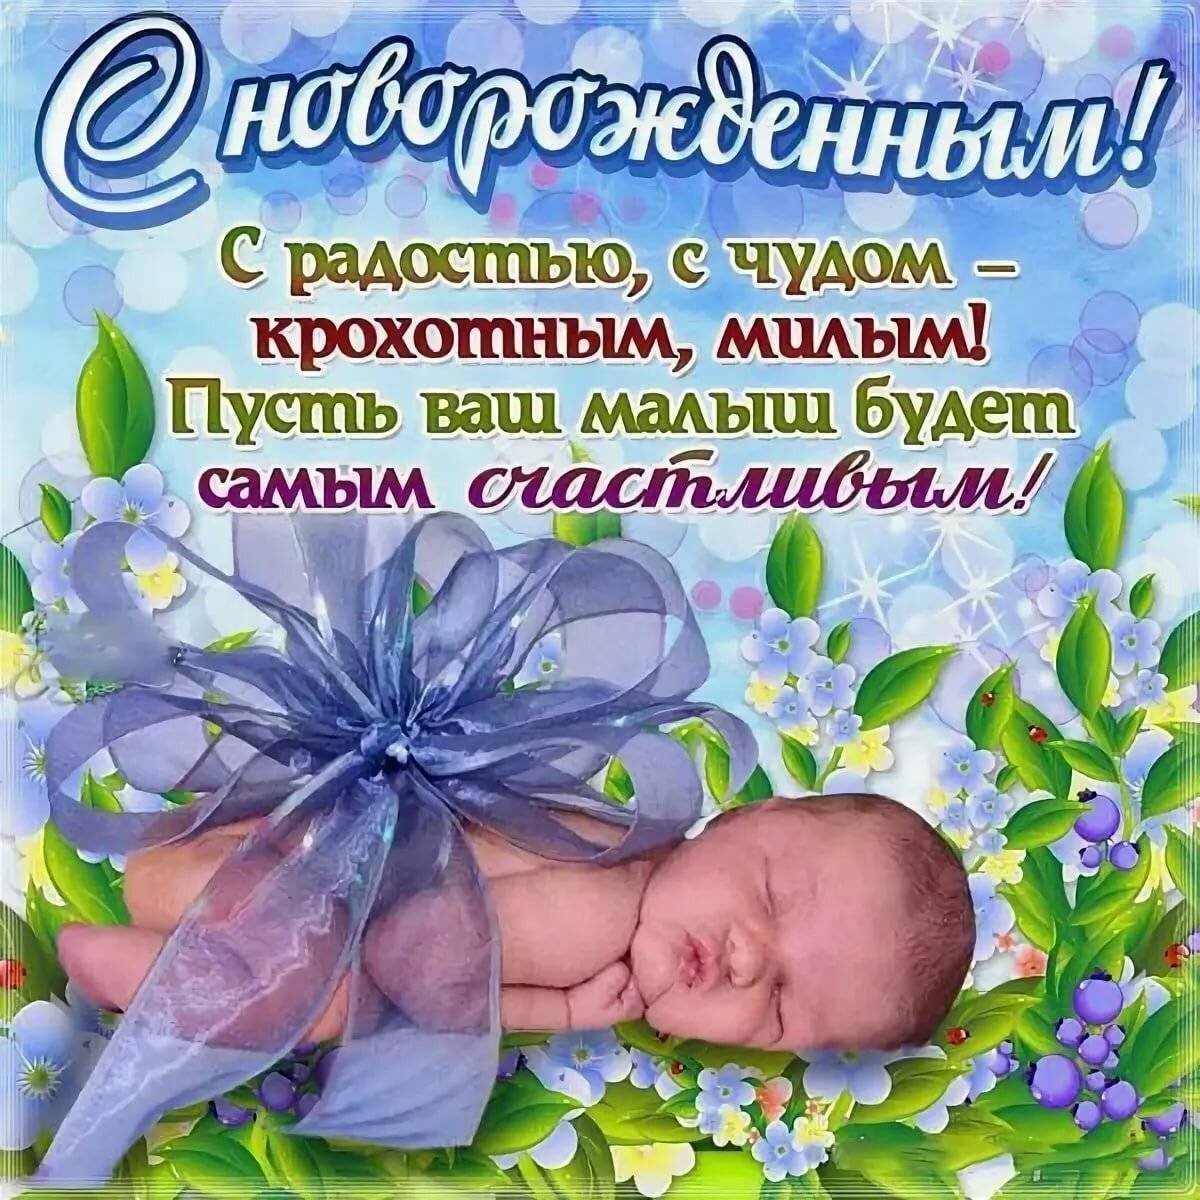 Картинки с рождением сына